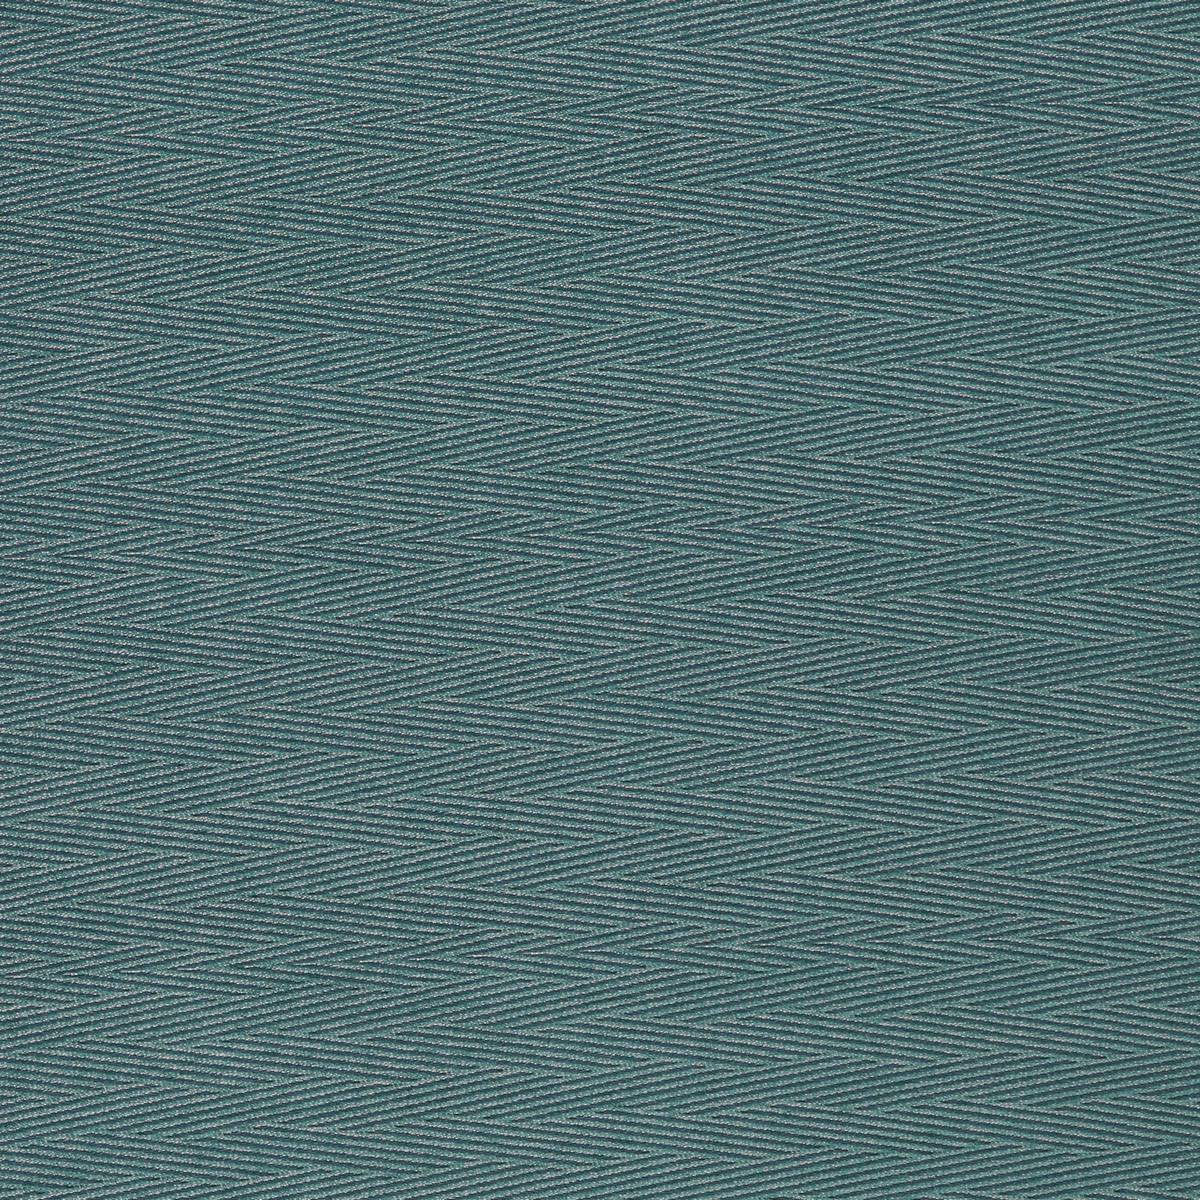 Meika Marine Fabric by Harlequin